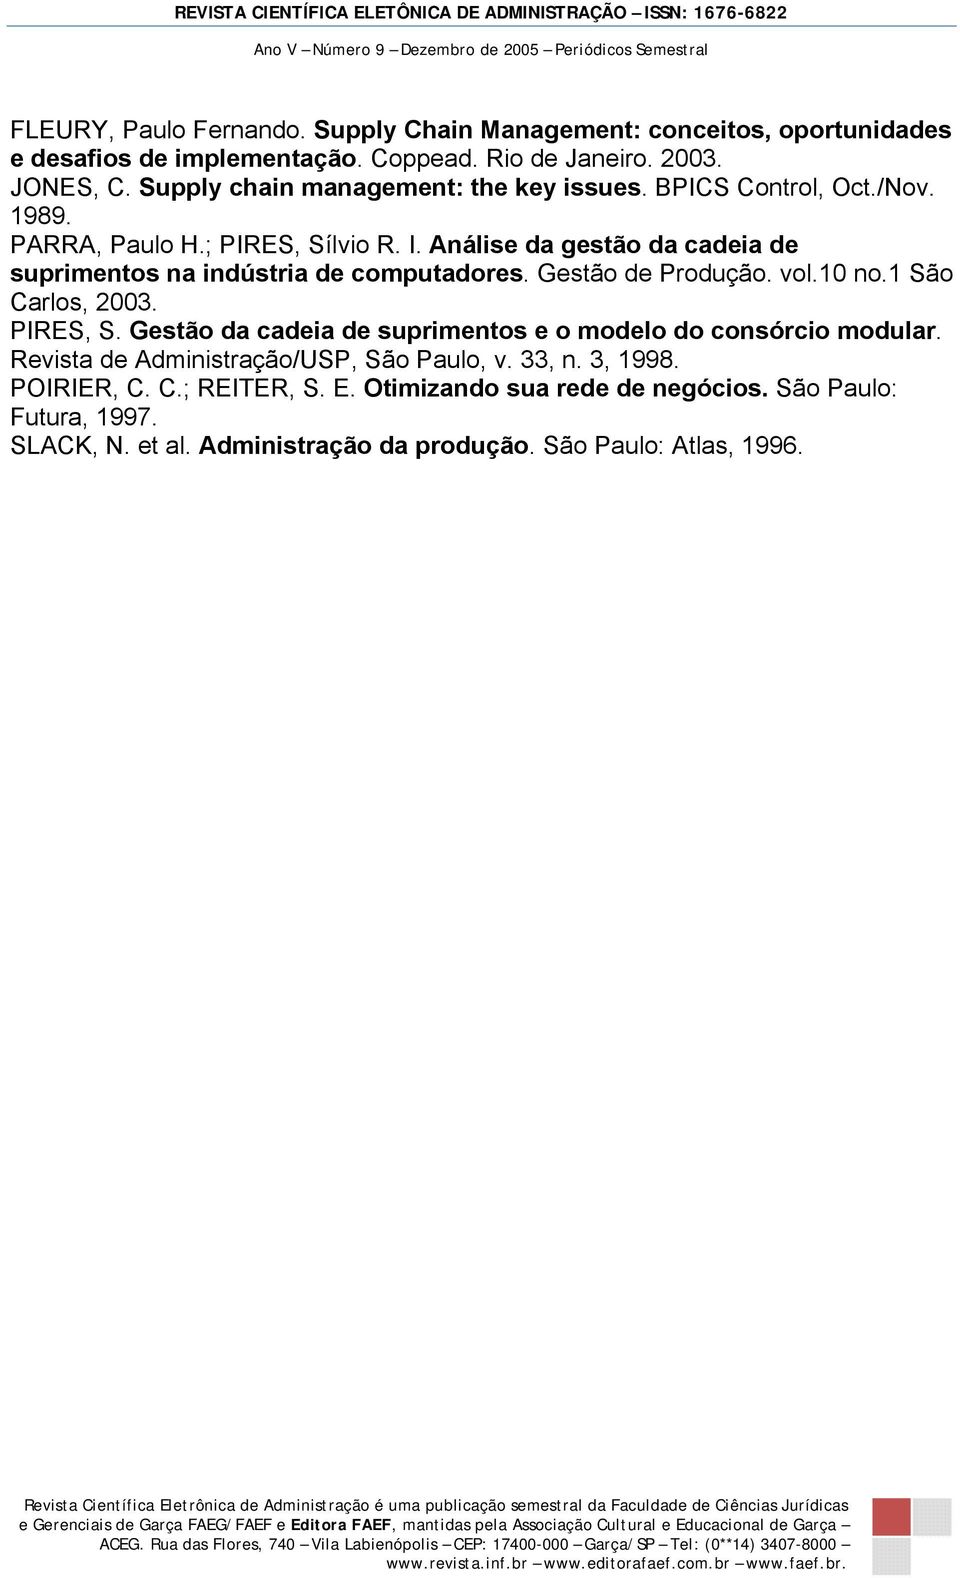 Análise da gestão da cadeia de suprimentos na indústria de computadores. Gestão de Produção. vol.10 no.1 São Carlos, 2003. PIRES, S.